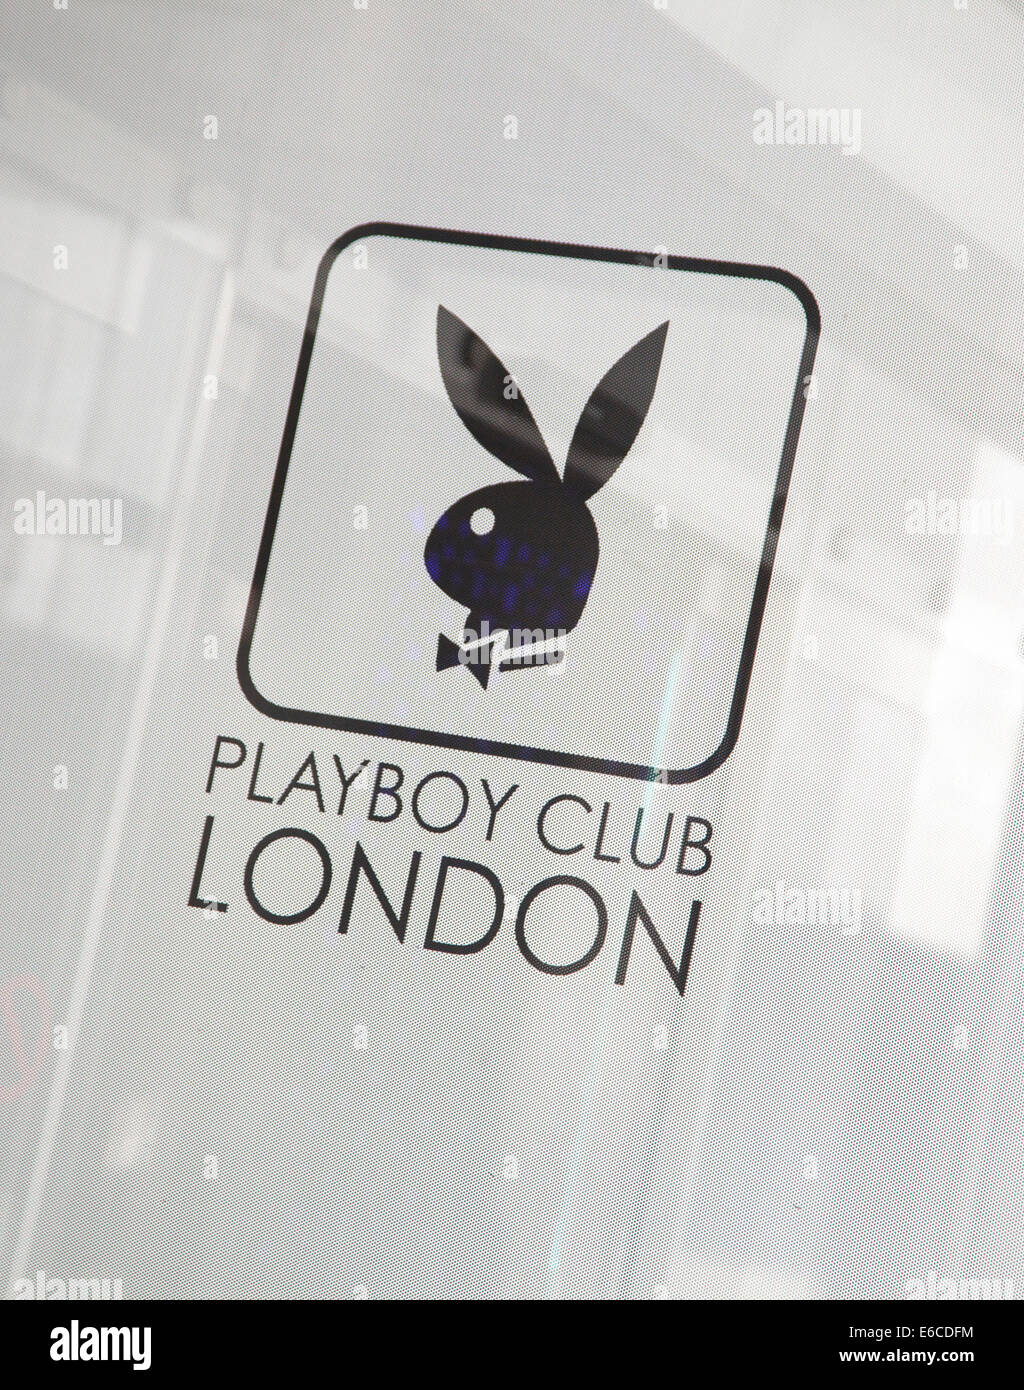 louis vuitton playboy bunny logo